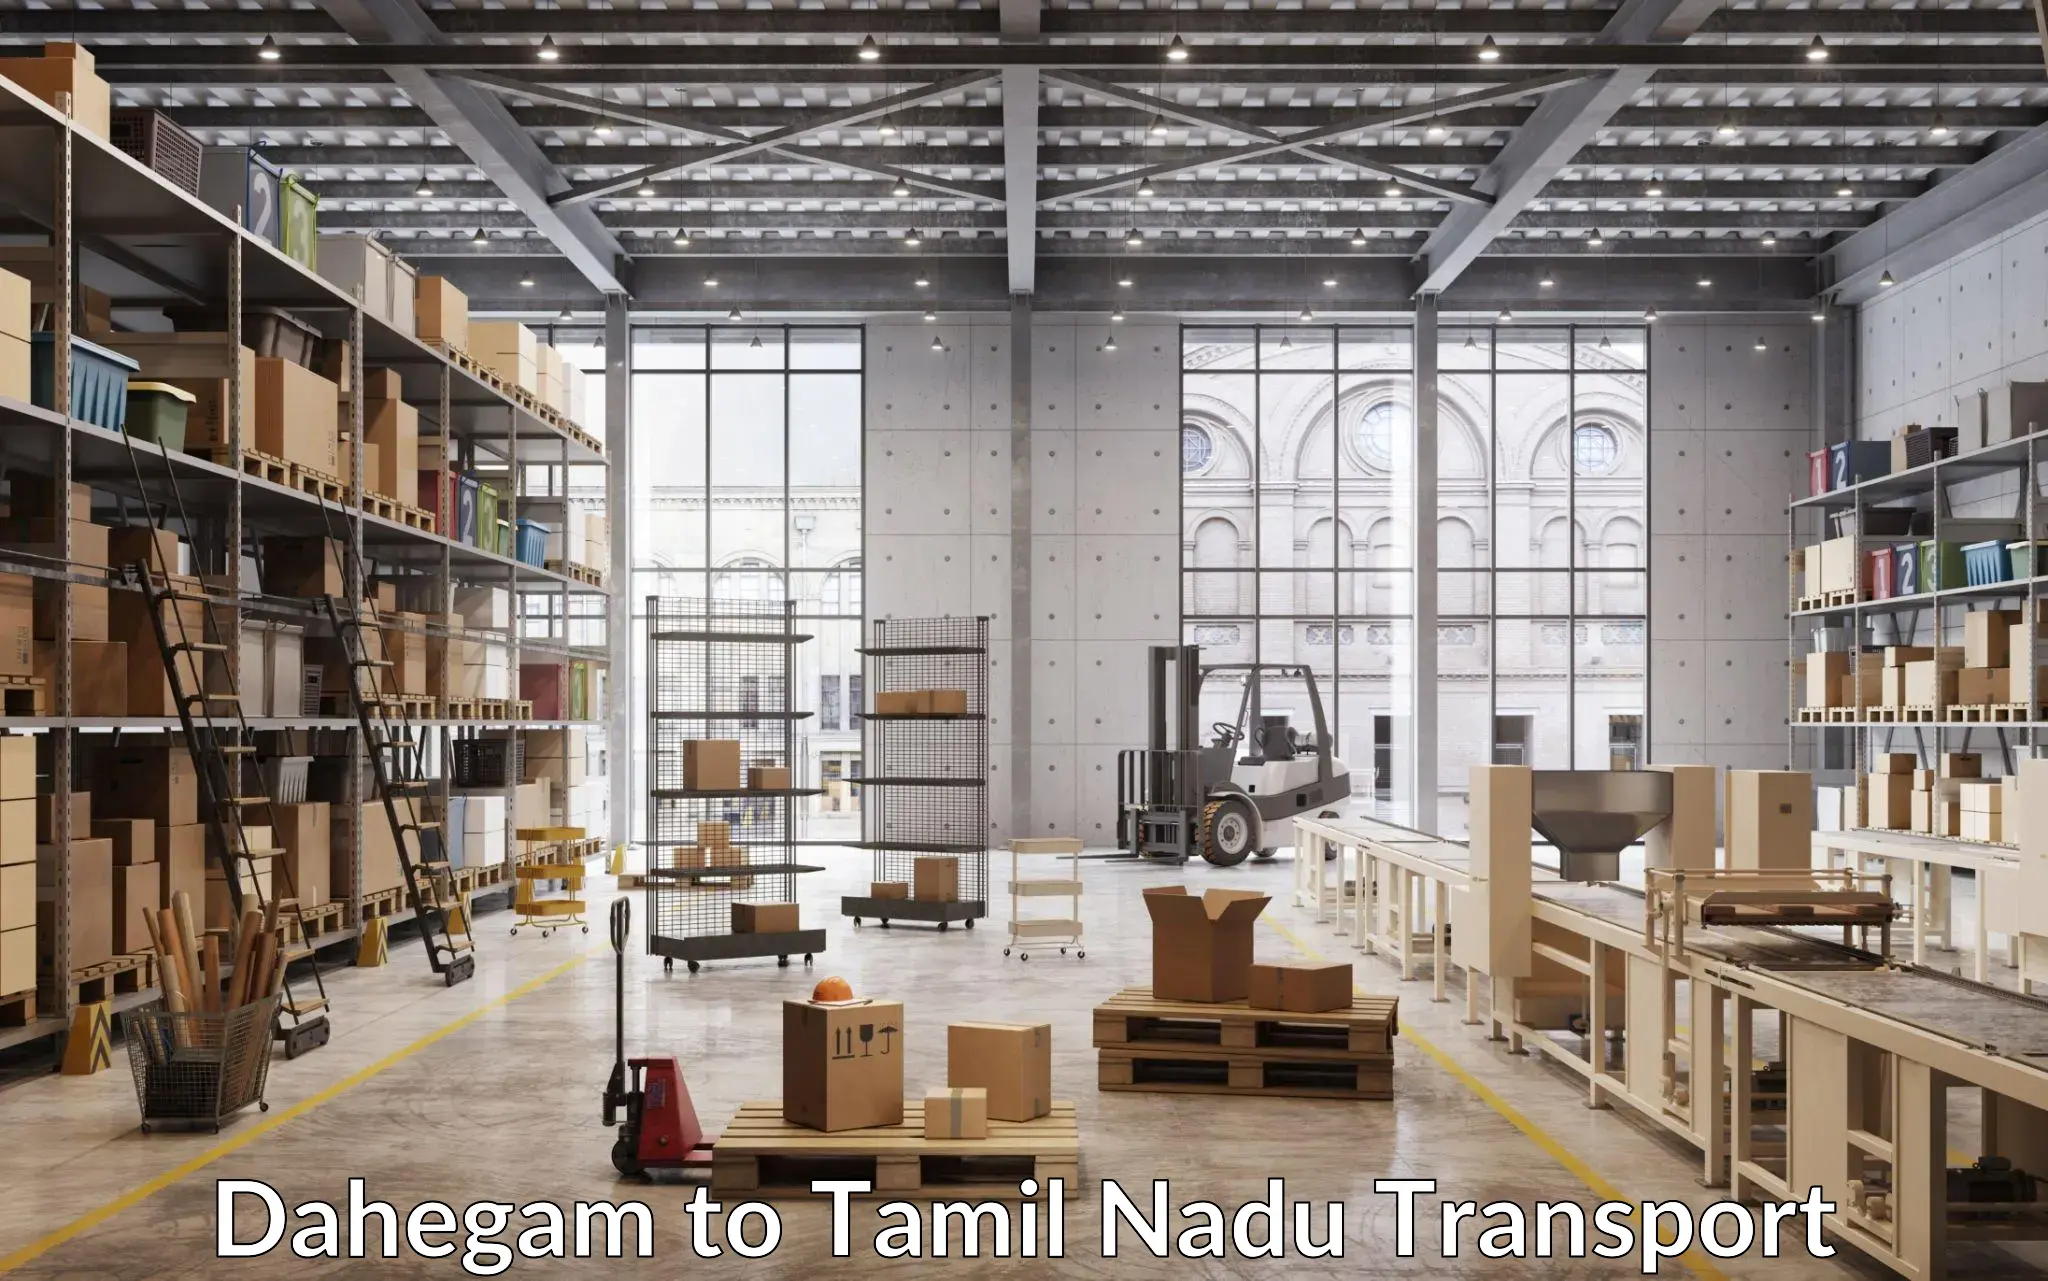 Transportation services Dahegam to Madurai